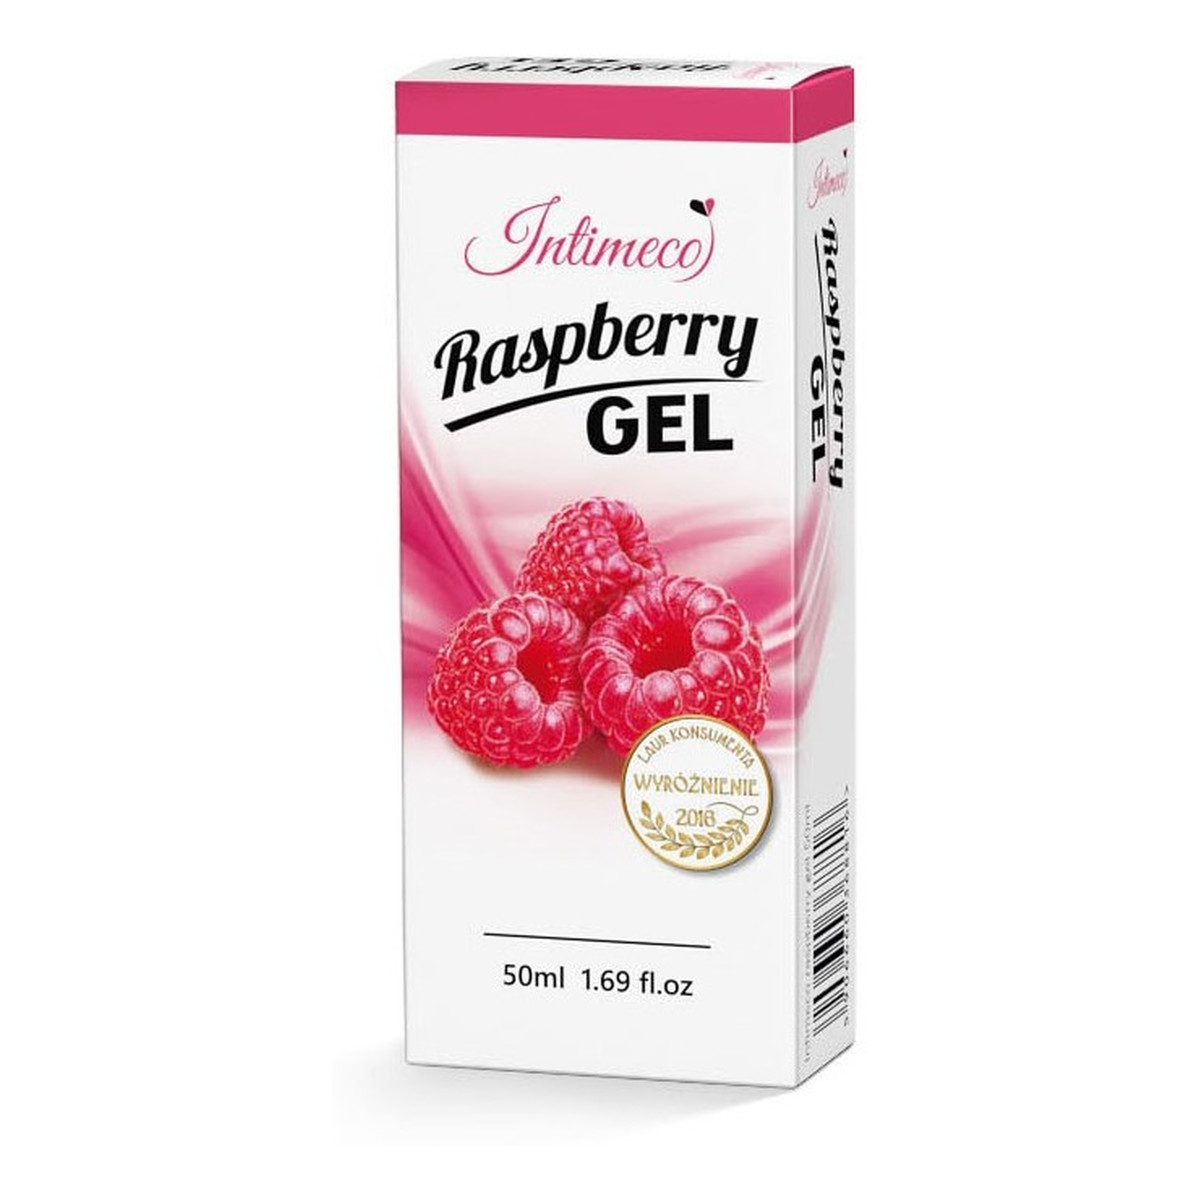 Intimeco Raspberry Aqua Gel nawilżający Żel intymny o aromacie malinowym 50ml